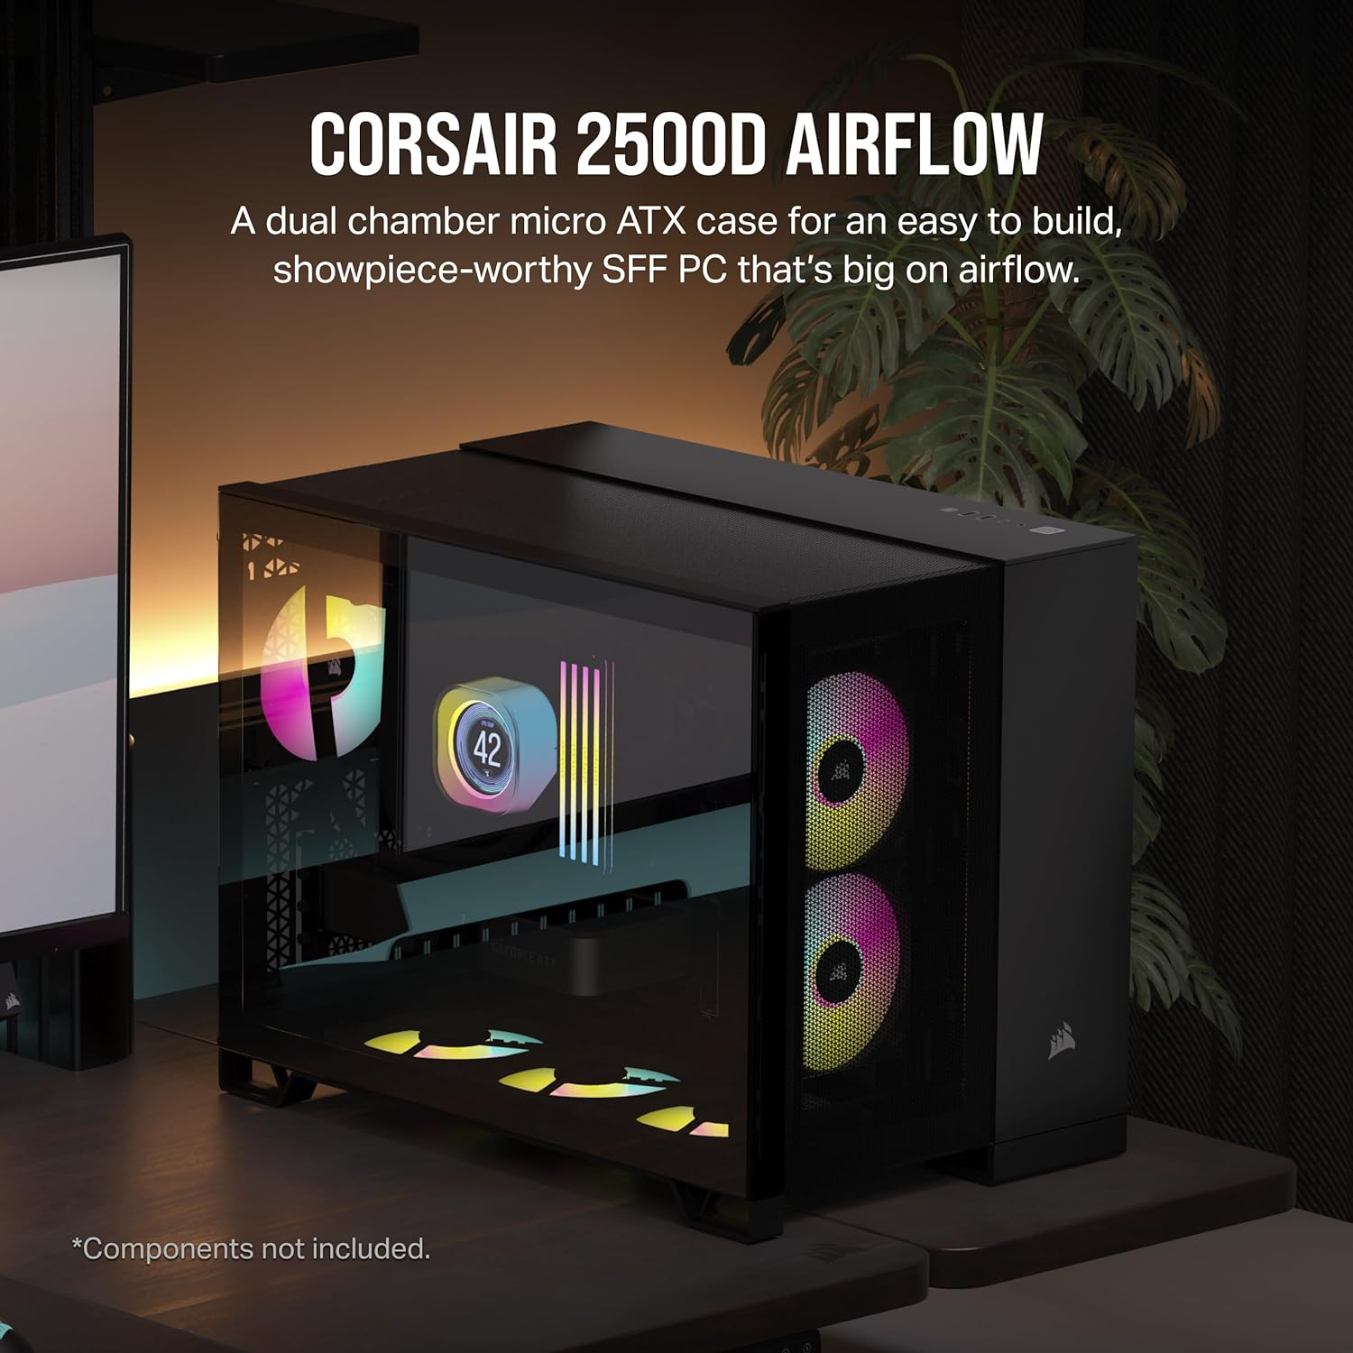 CORSAIR-2500D-AIRFLOW-Small-Tower-mATX-Dual-Chamber-PC-Case-–-Black